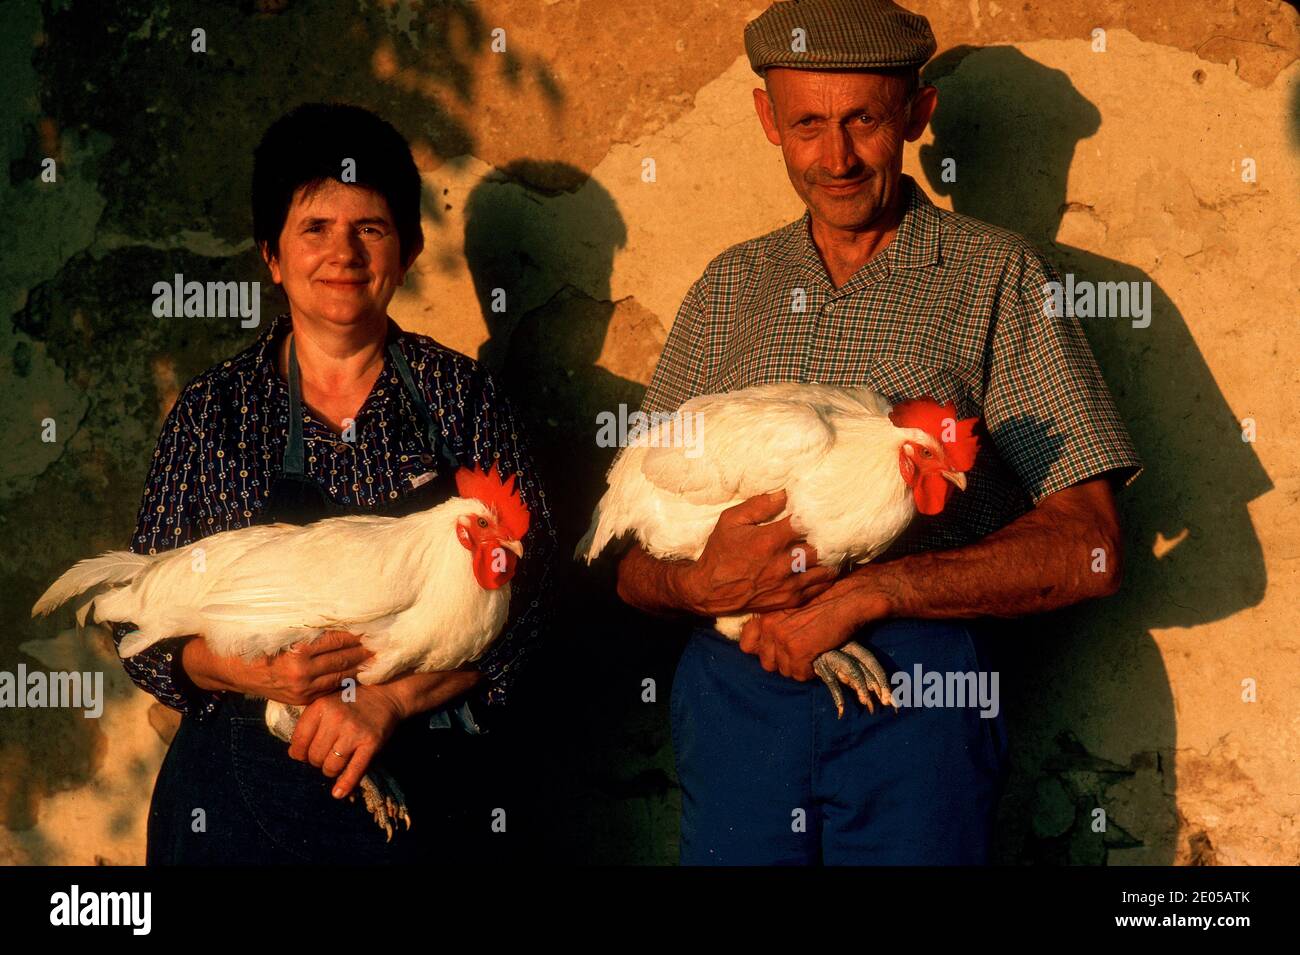 Farmer coupél posant avec leurs poulets de Bresse primés dans La province française Bresse, France Banque D'Images